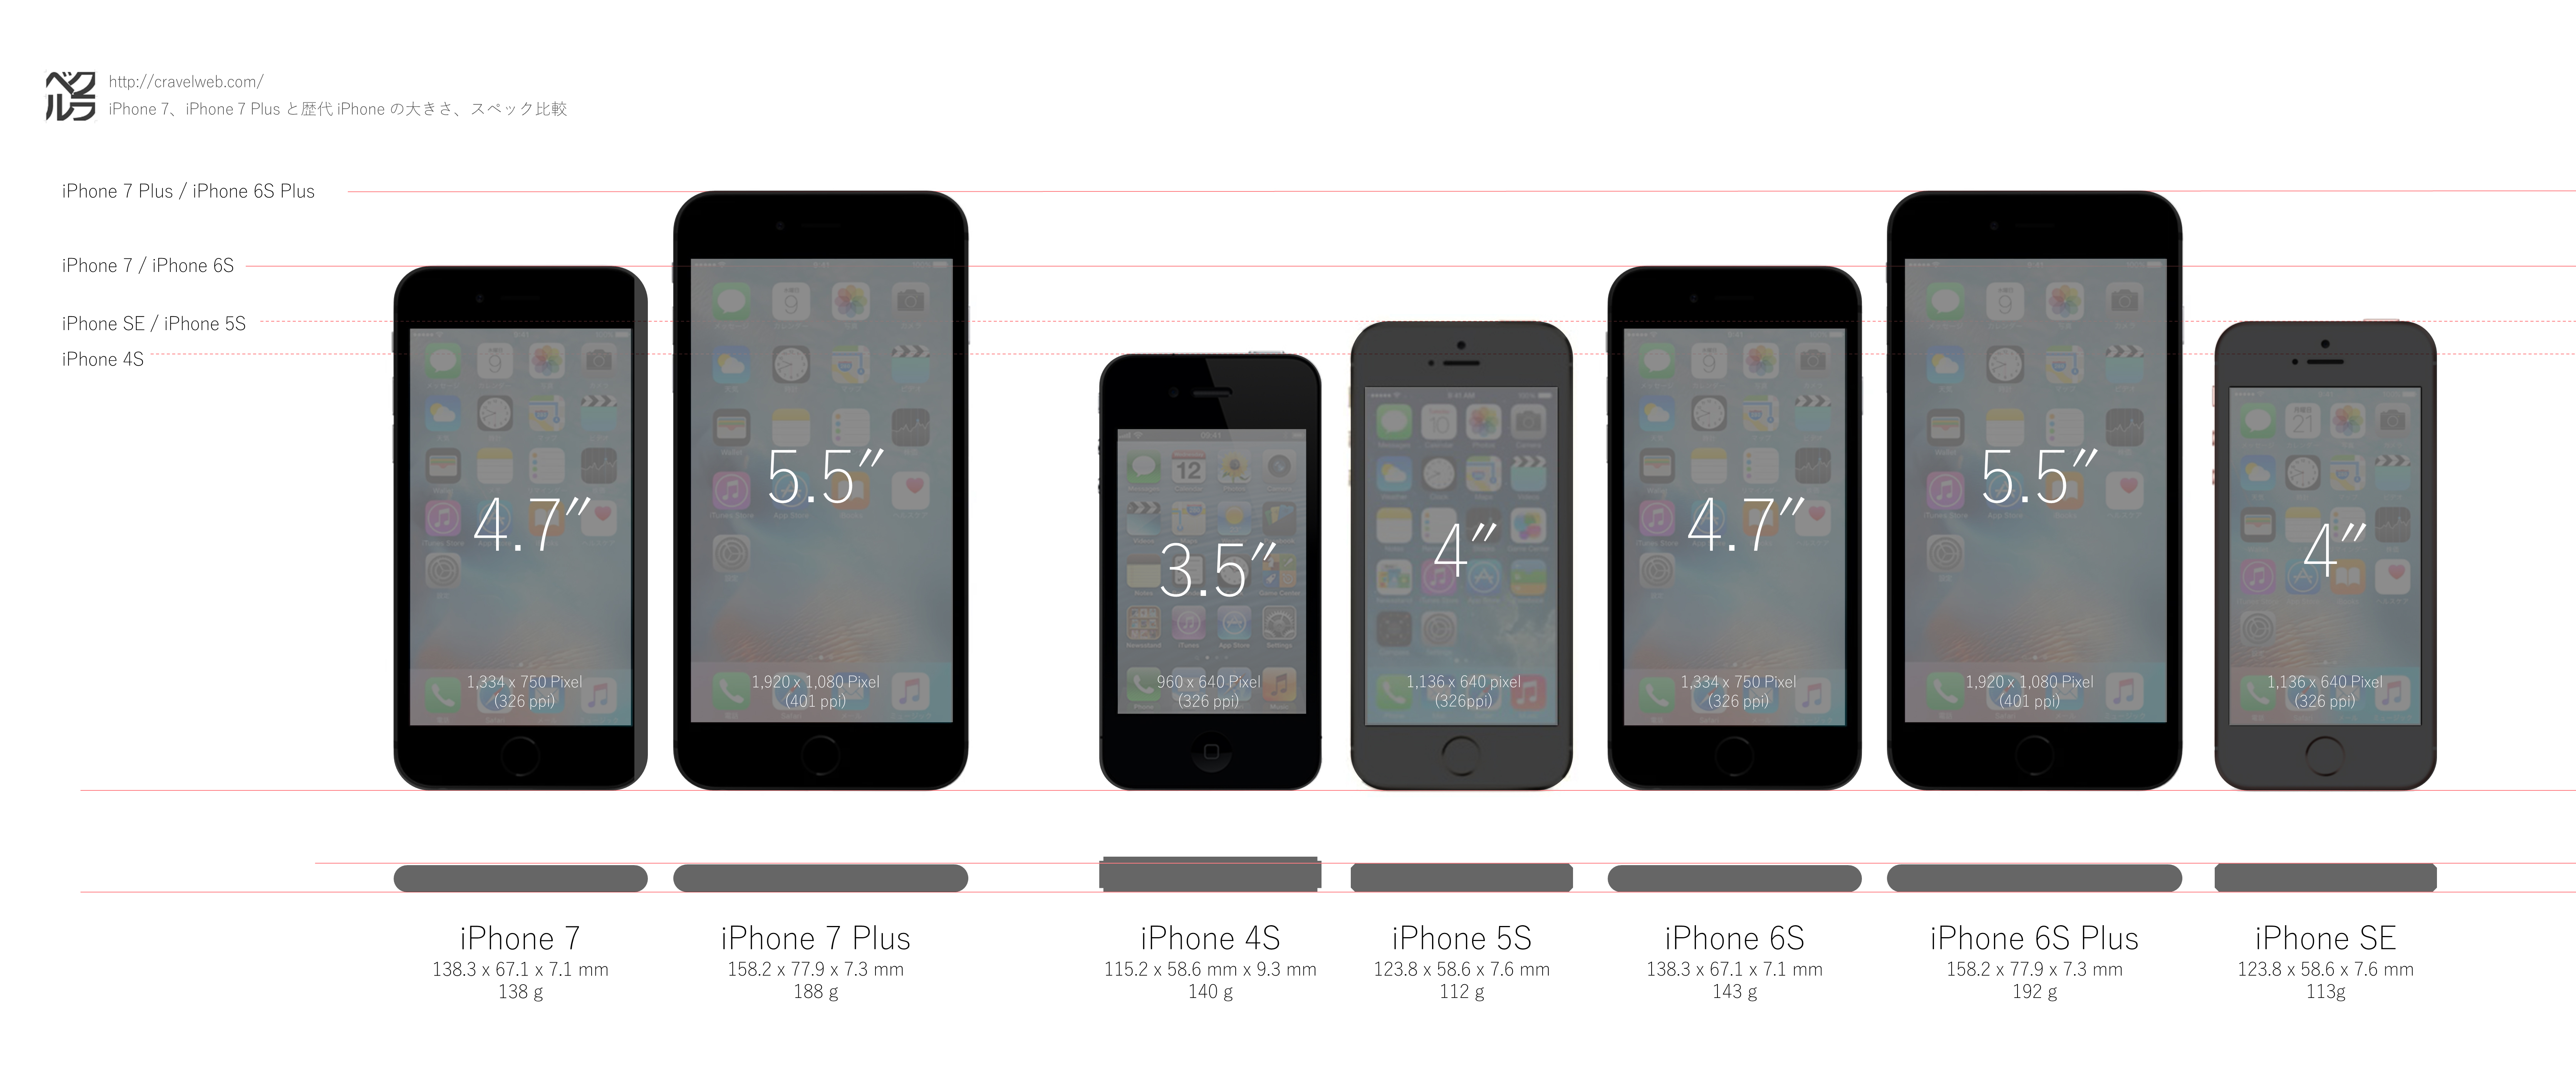 iPhone 7、iPhone 7 Plus と歴代の iPhone シリーズの大きさを比較してみた – CRAVEL (クラベル)